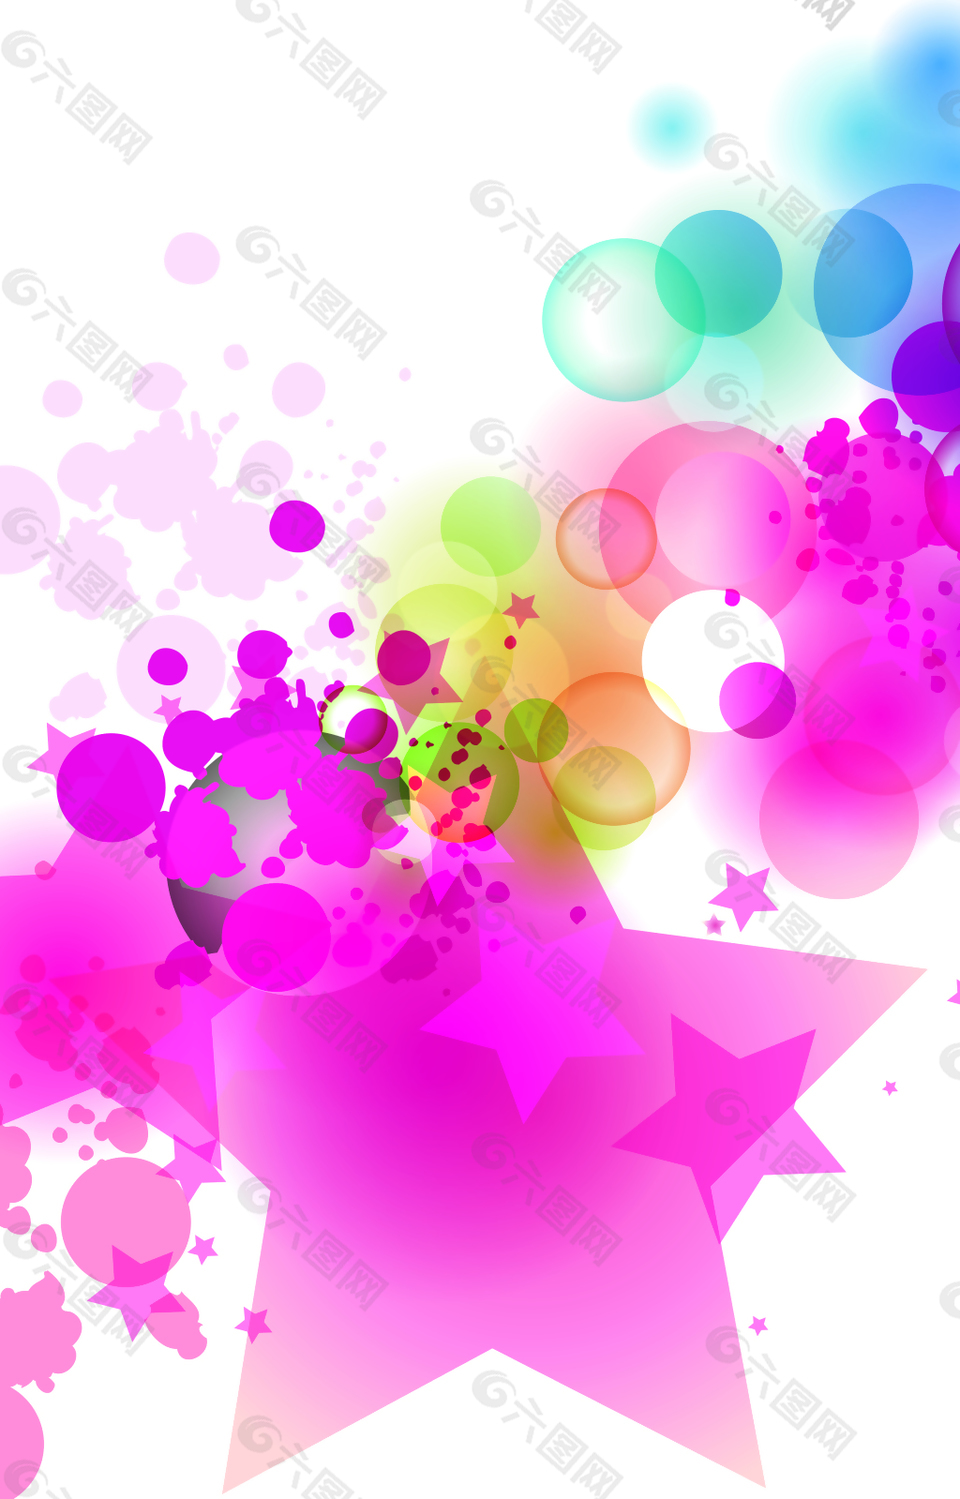 粉色五角星和圆圈背景素材背景素材免费下载 图片编号 493 六图网